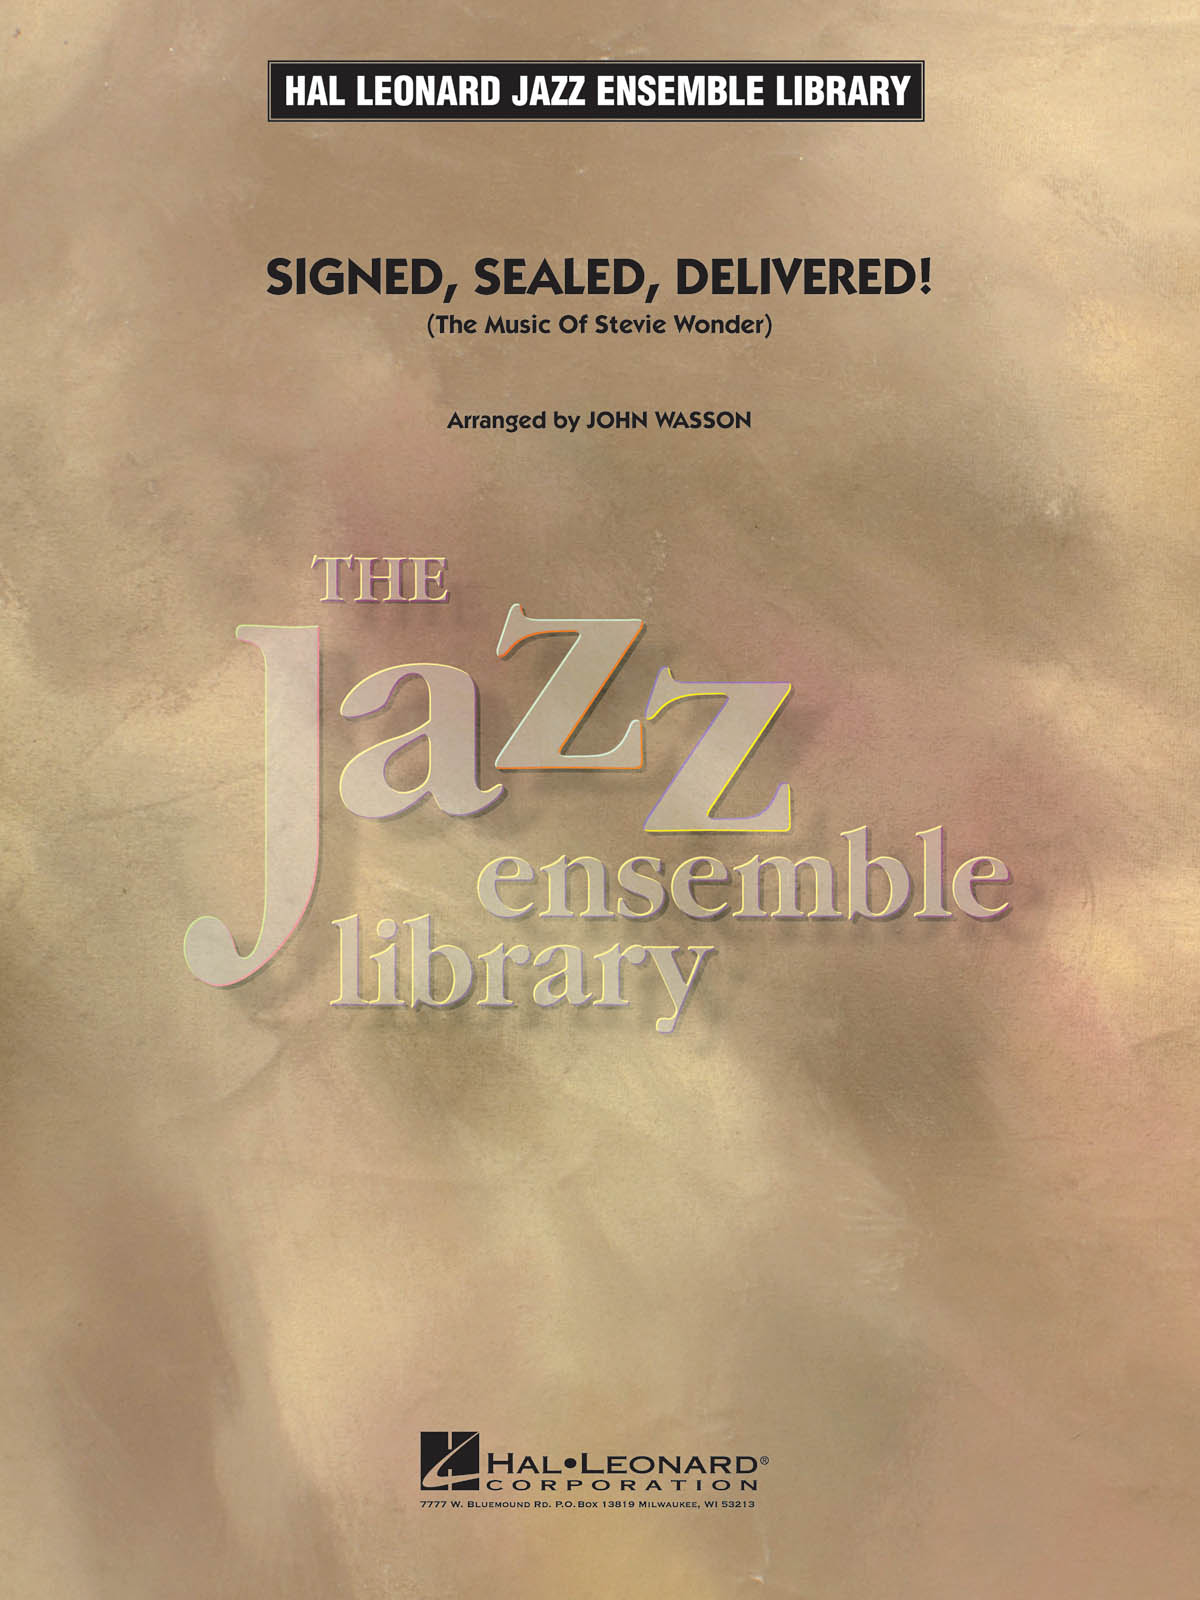 Signed, Sealed, Delivered!  - pro Jazzový orchestr